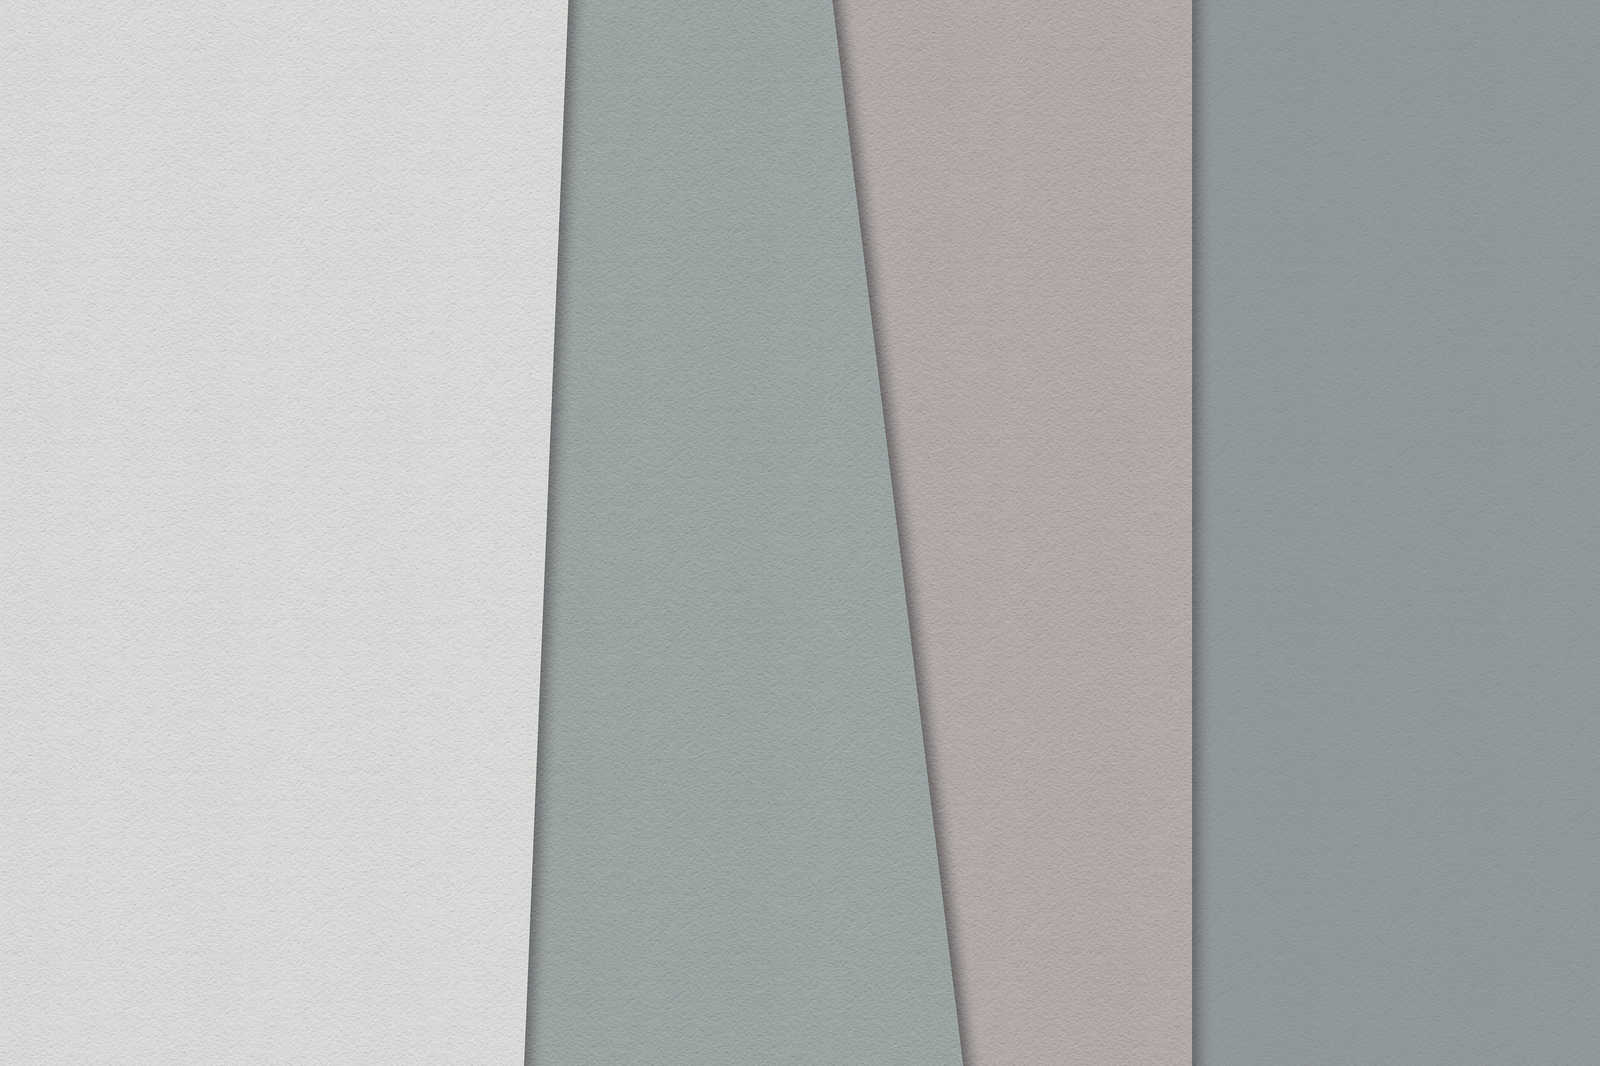             Gelaagd papier 1 - Grafisch canvas schilderij met gekleurde vlakken in handgeschept papier structuur - 1.20 m x 0.80 m
        